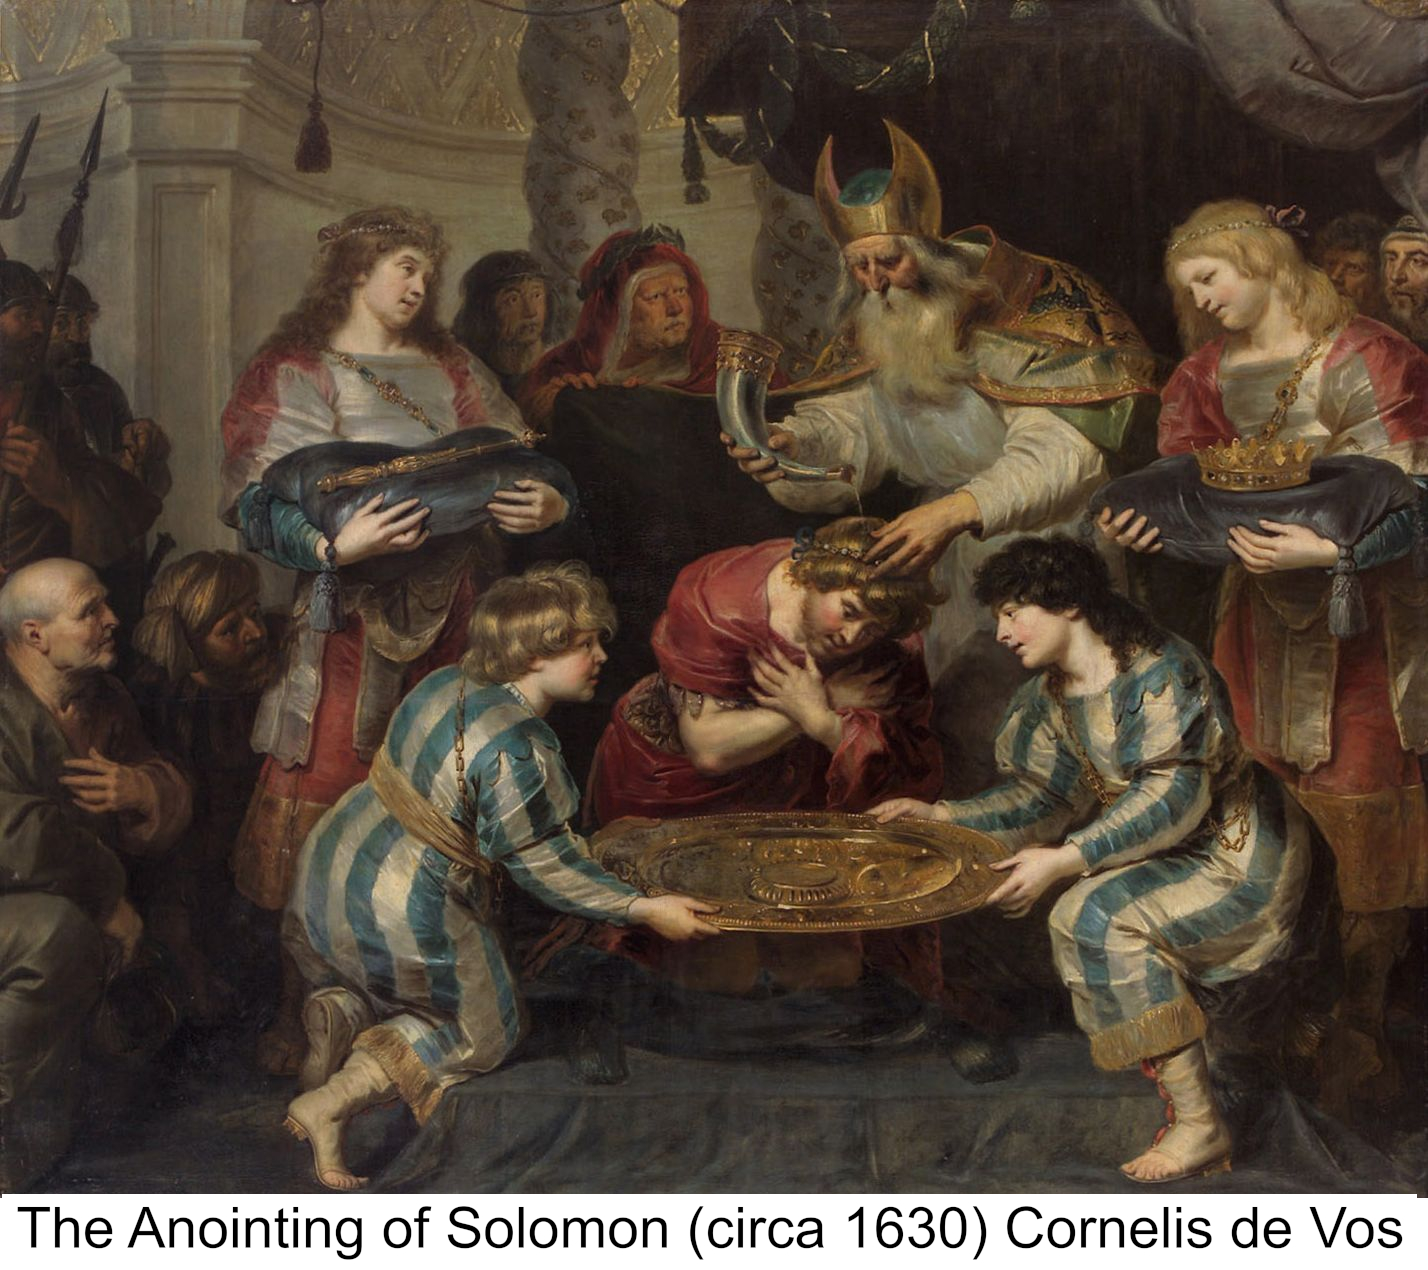 The Anointing of Solomon (circa 1630) Cornelis de Vos